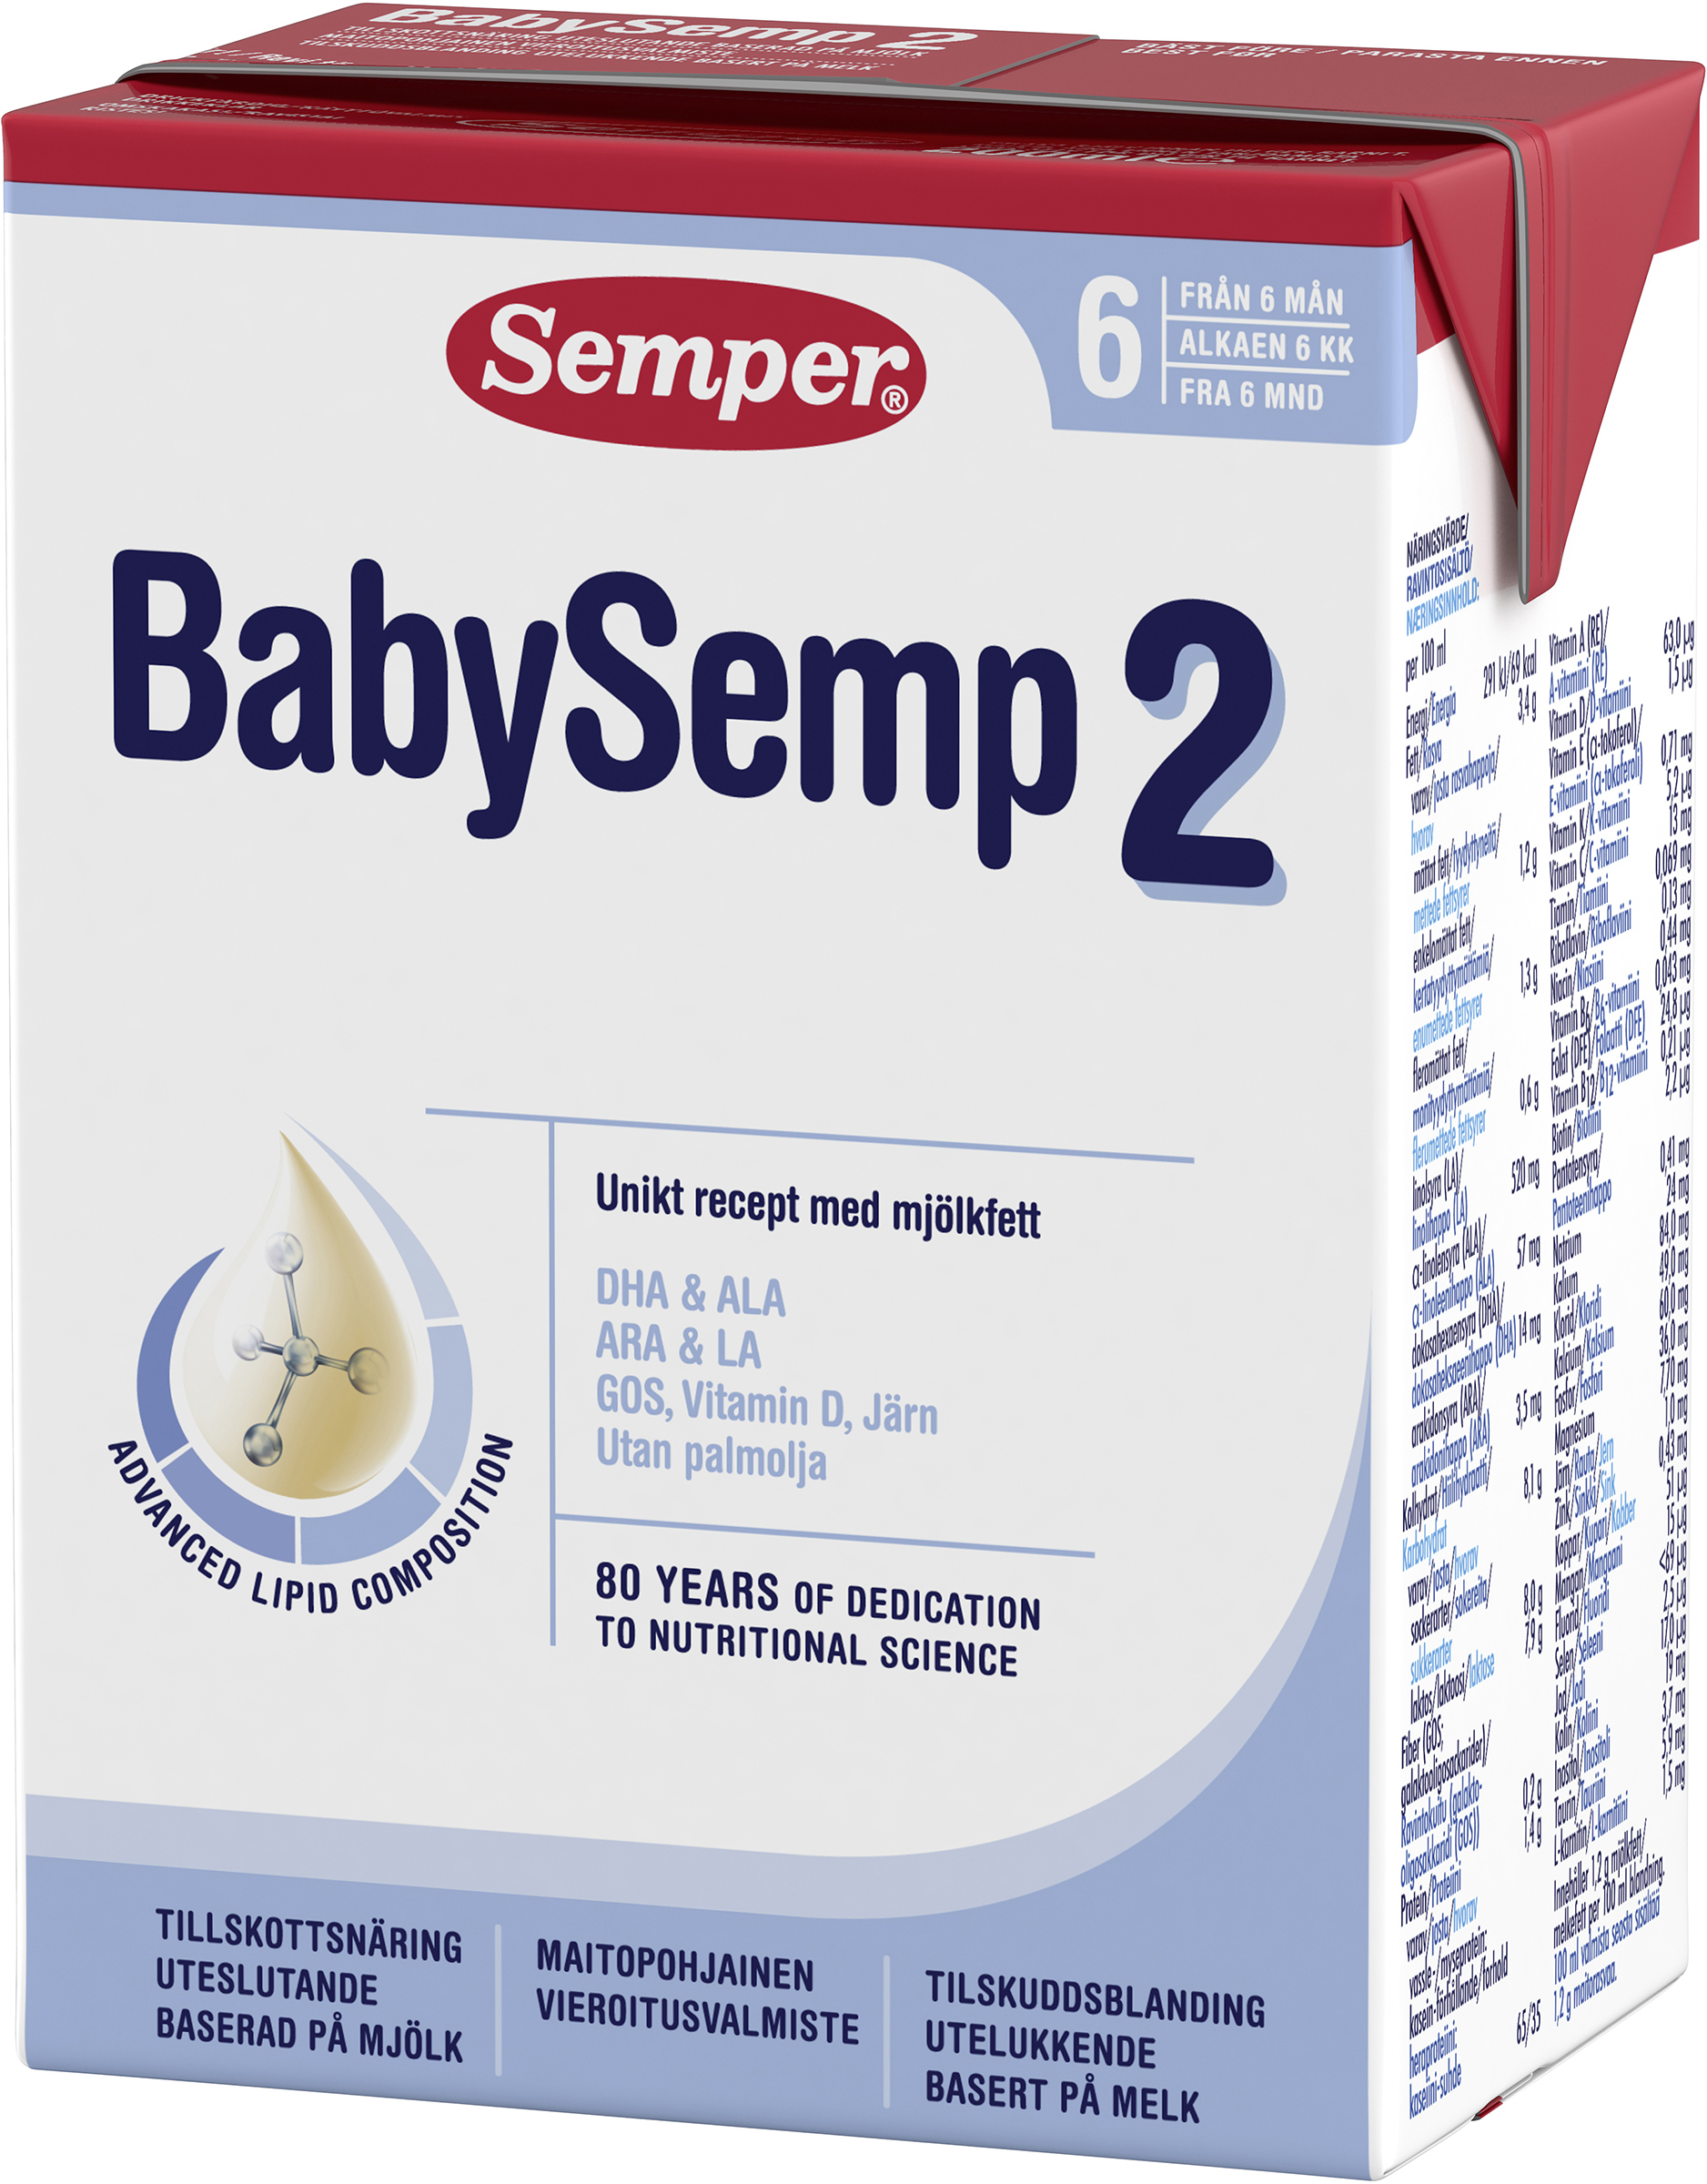 Semper BabySemp 2 Drickfärdig Tillskottsnäring 200 ml